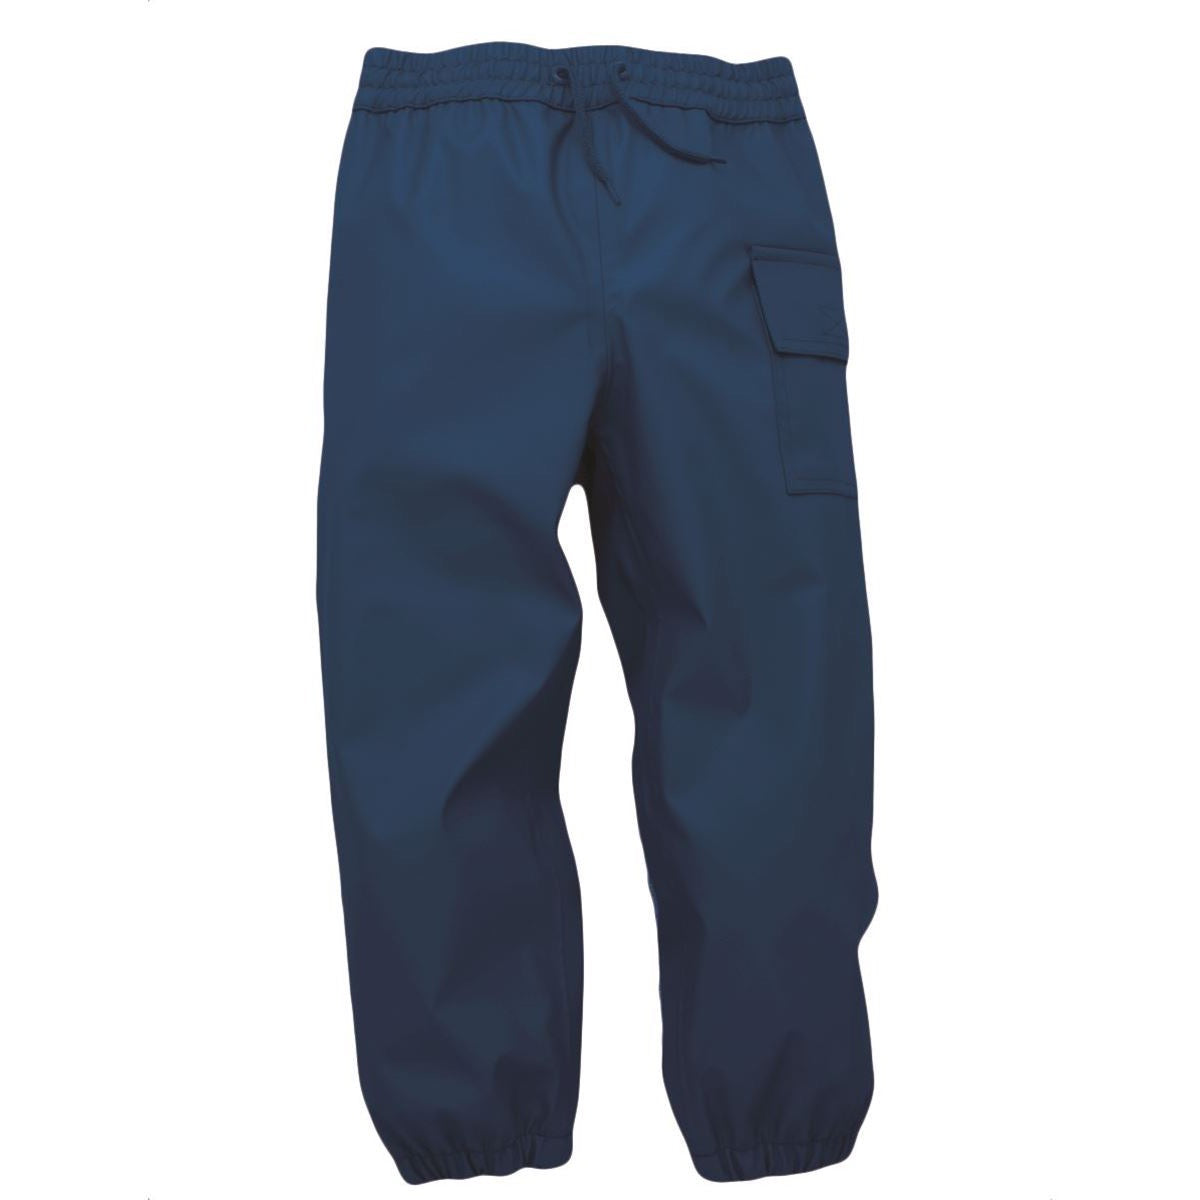 Hatley Splash Pants Navy Clothing 2YRS / Navy,3YRS / Navy,4YRS / Navy,5YRS / Navy,6YRS / Navy,7YRS / Navy,8YRS / Navy,10YRS / Navy